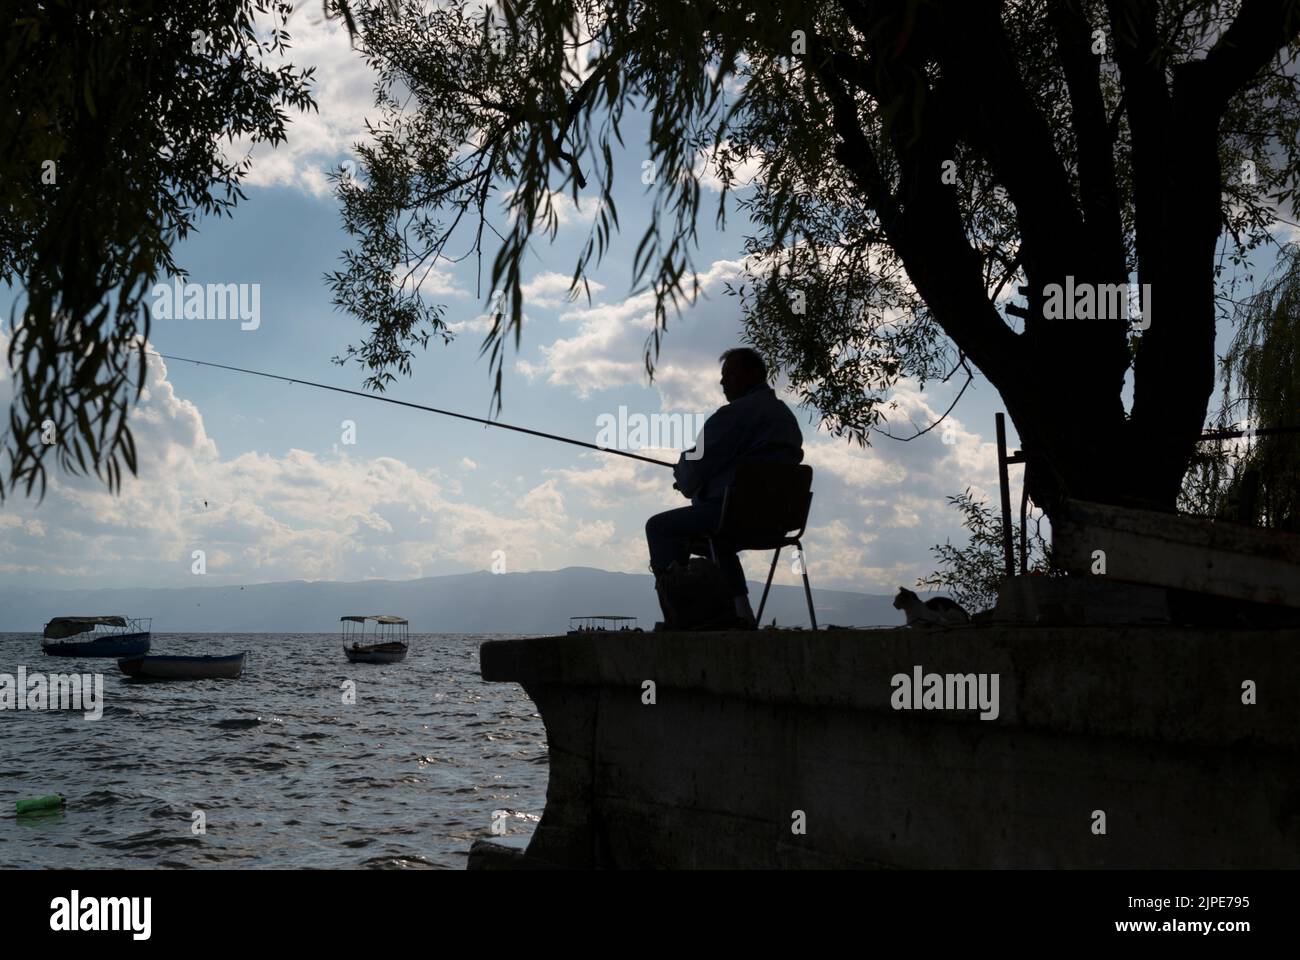 Silueta de un pescador deportivo y un gato oportunista detrás de él bajo un árbol en el lago Ohrid, Macedonia del Norte. Foto de stock